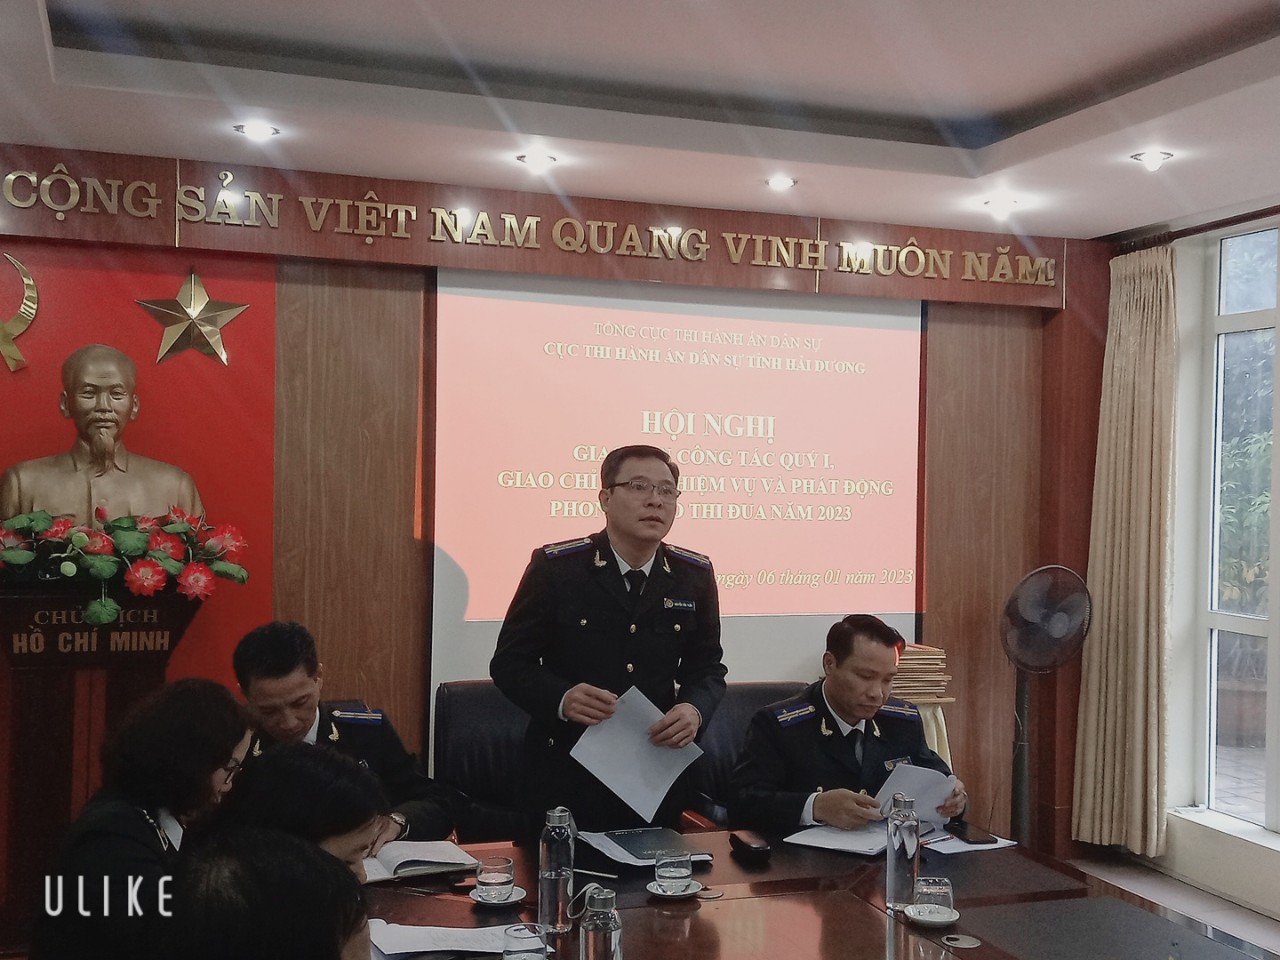 Cục Thi hành án dân sự tỉnh Hải Dương tổ chức Hội nghị giao ban công tác Quý I, giao chỉ tiêu nhiệm vụ và phát động phong trào thi đua năm 2023